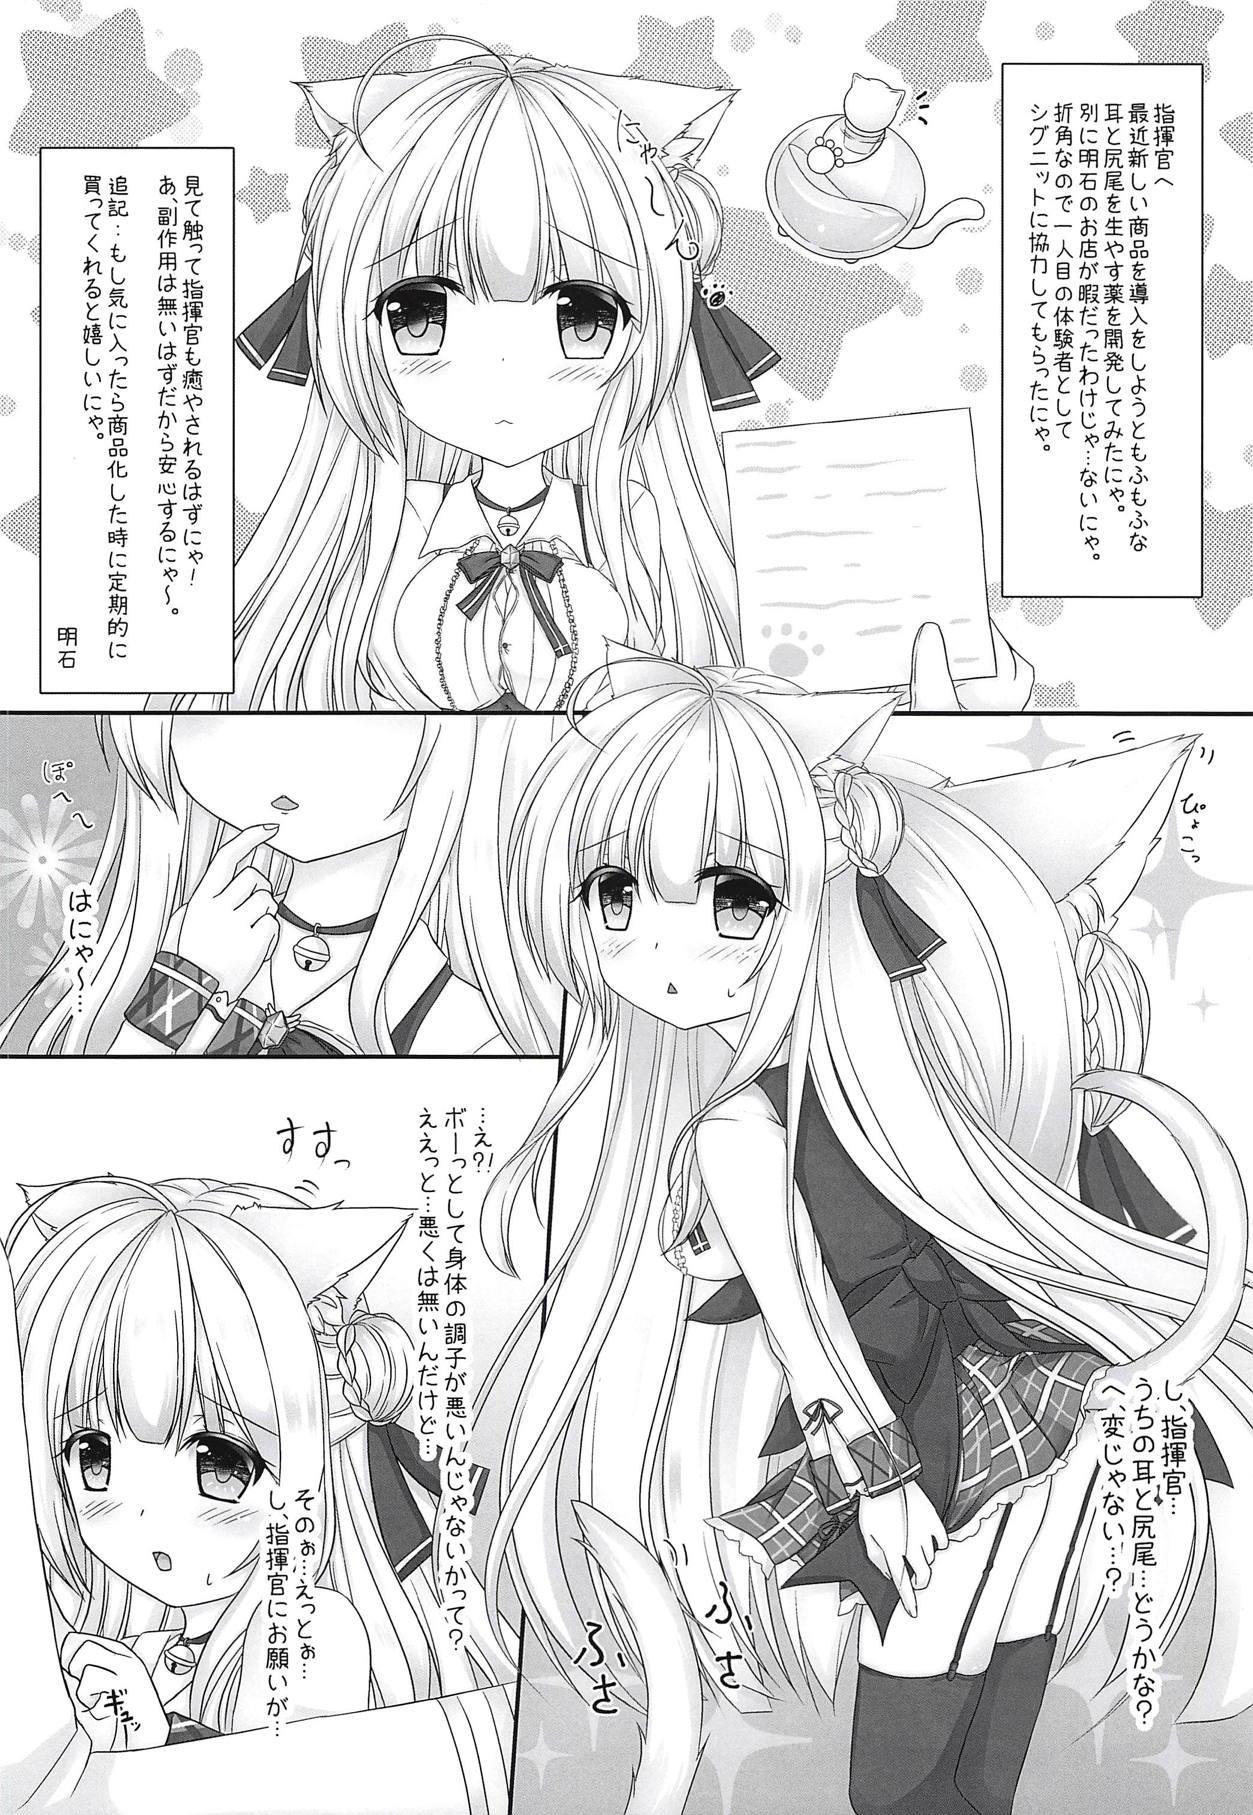 Exposed Honjitsu wa Nyanko Biyori desu - Azur lane Clitoris - Page 3